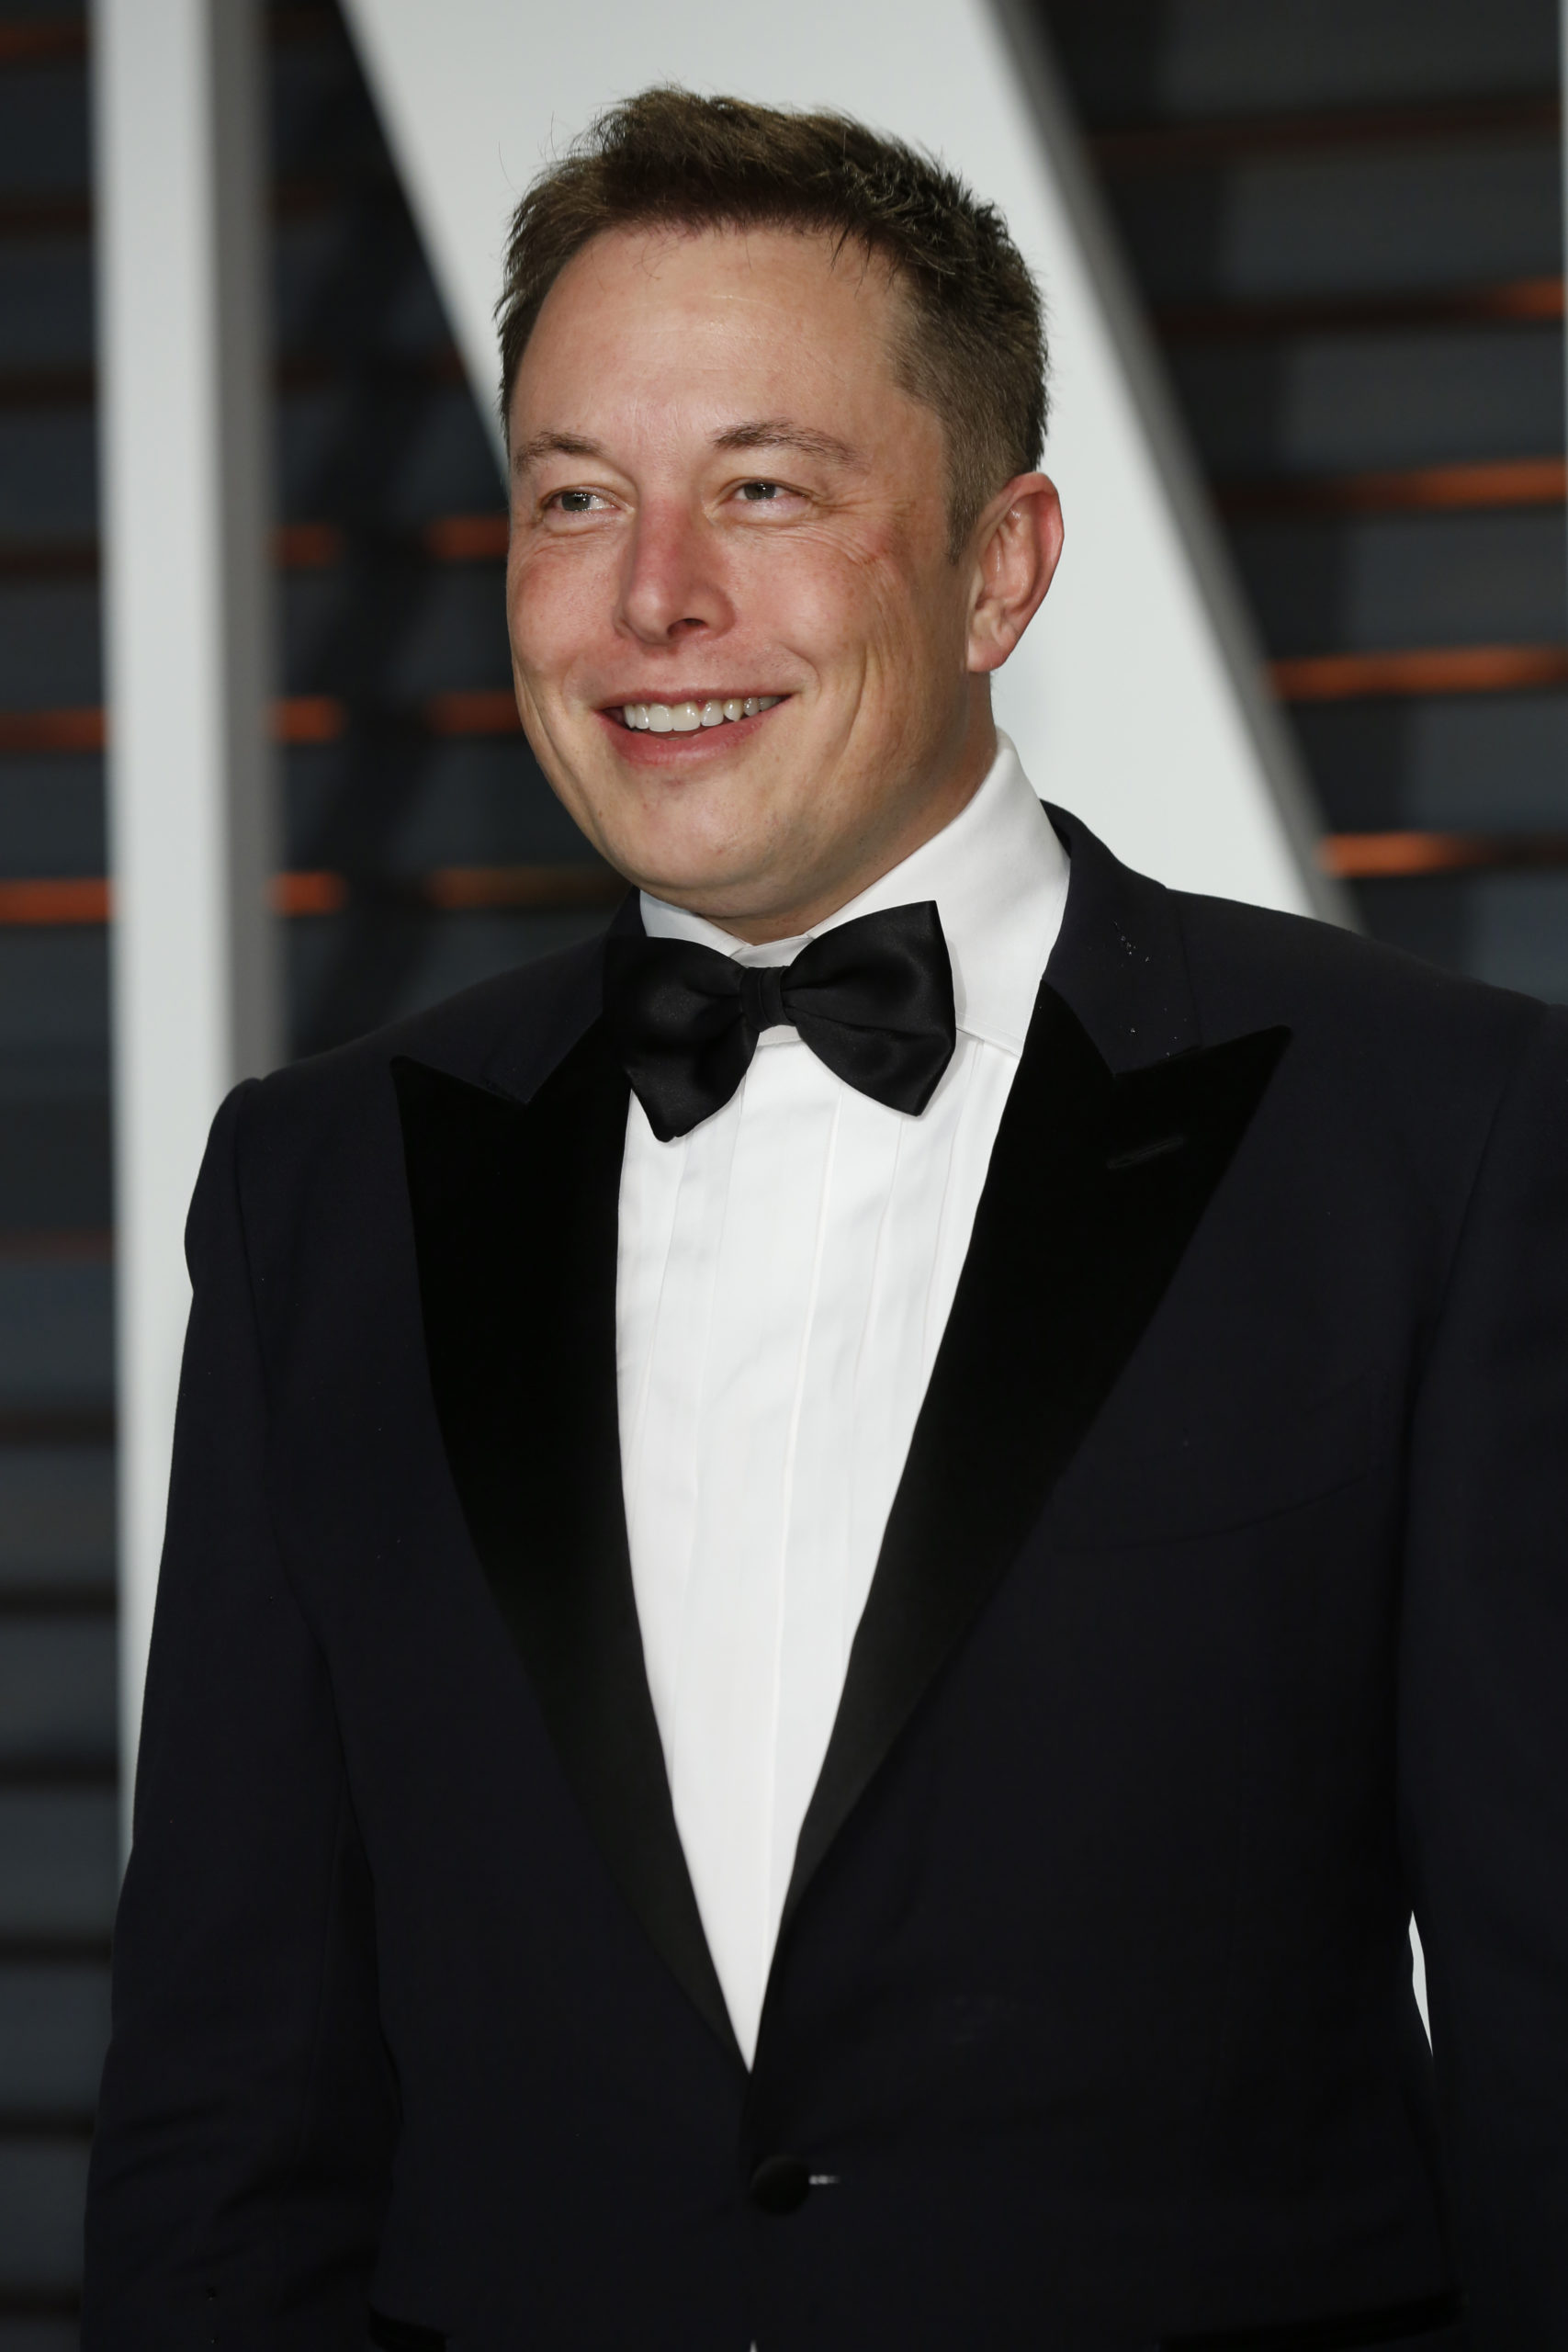 Elon Musk reclaims top spot as the world's richest man